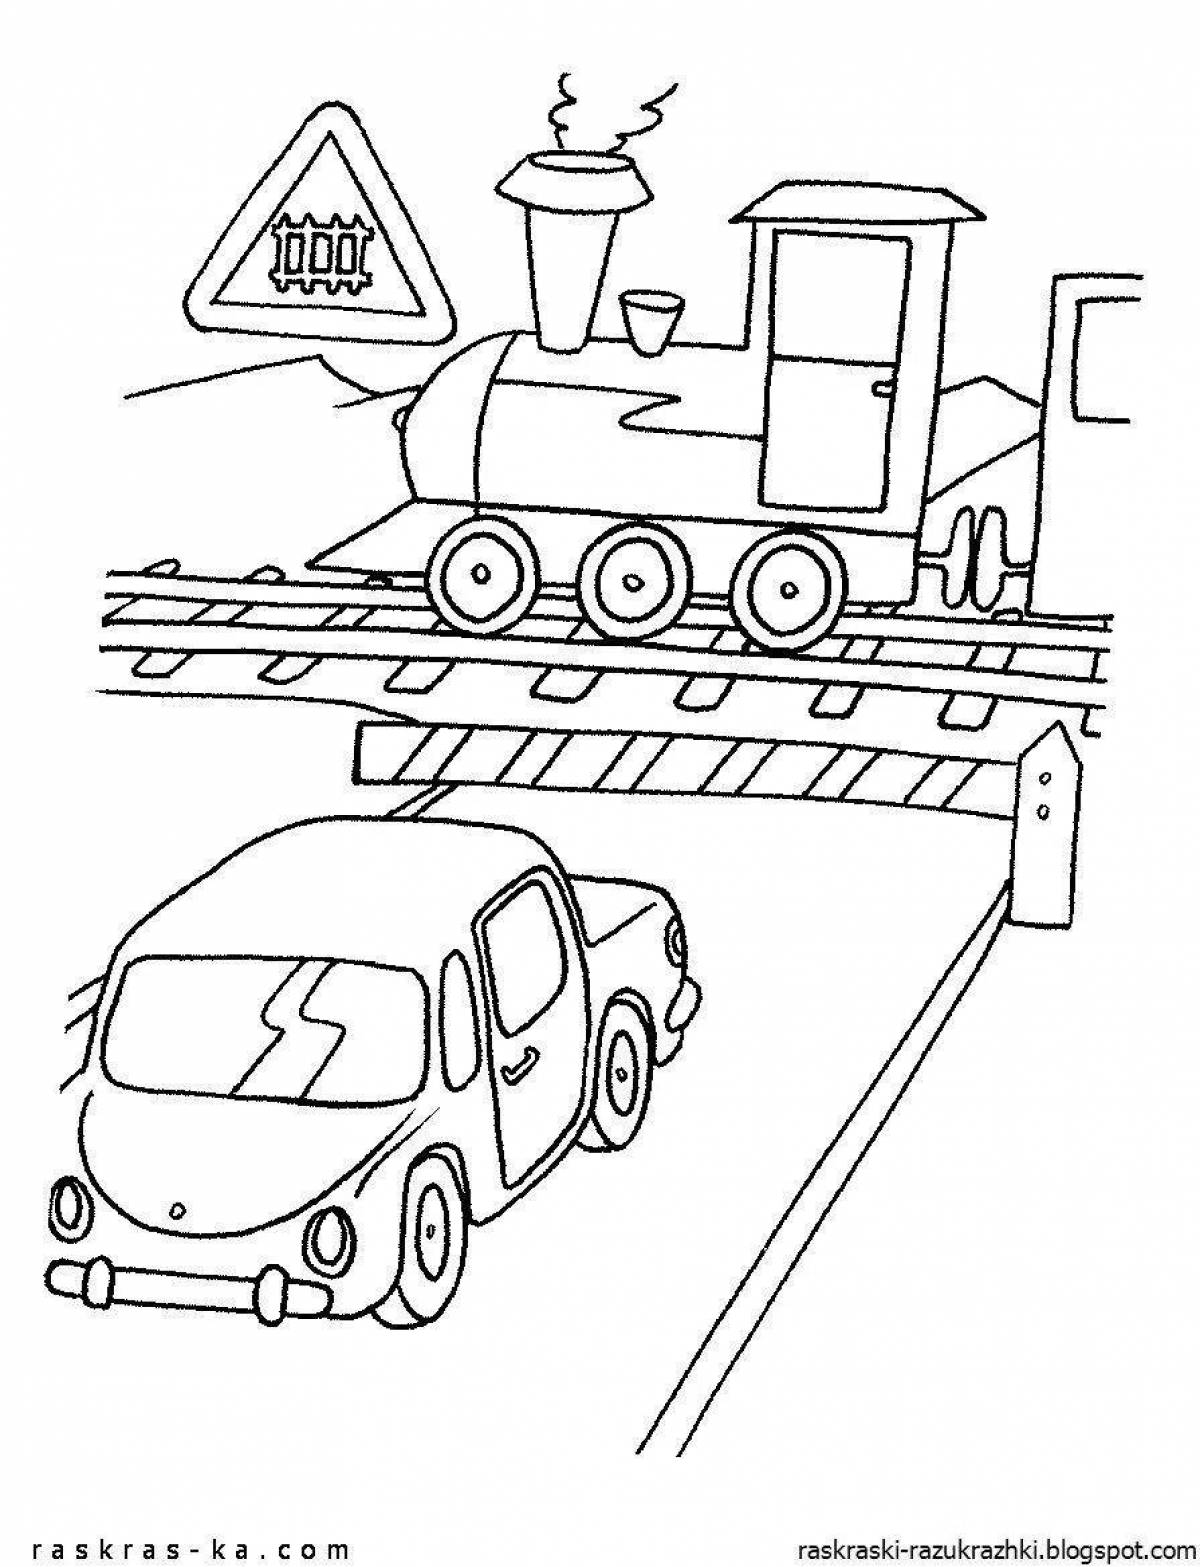 Раскраска по правилам дорожного движения для детей